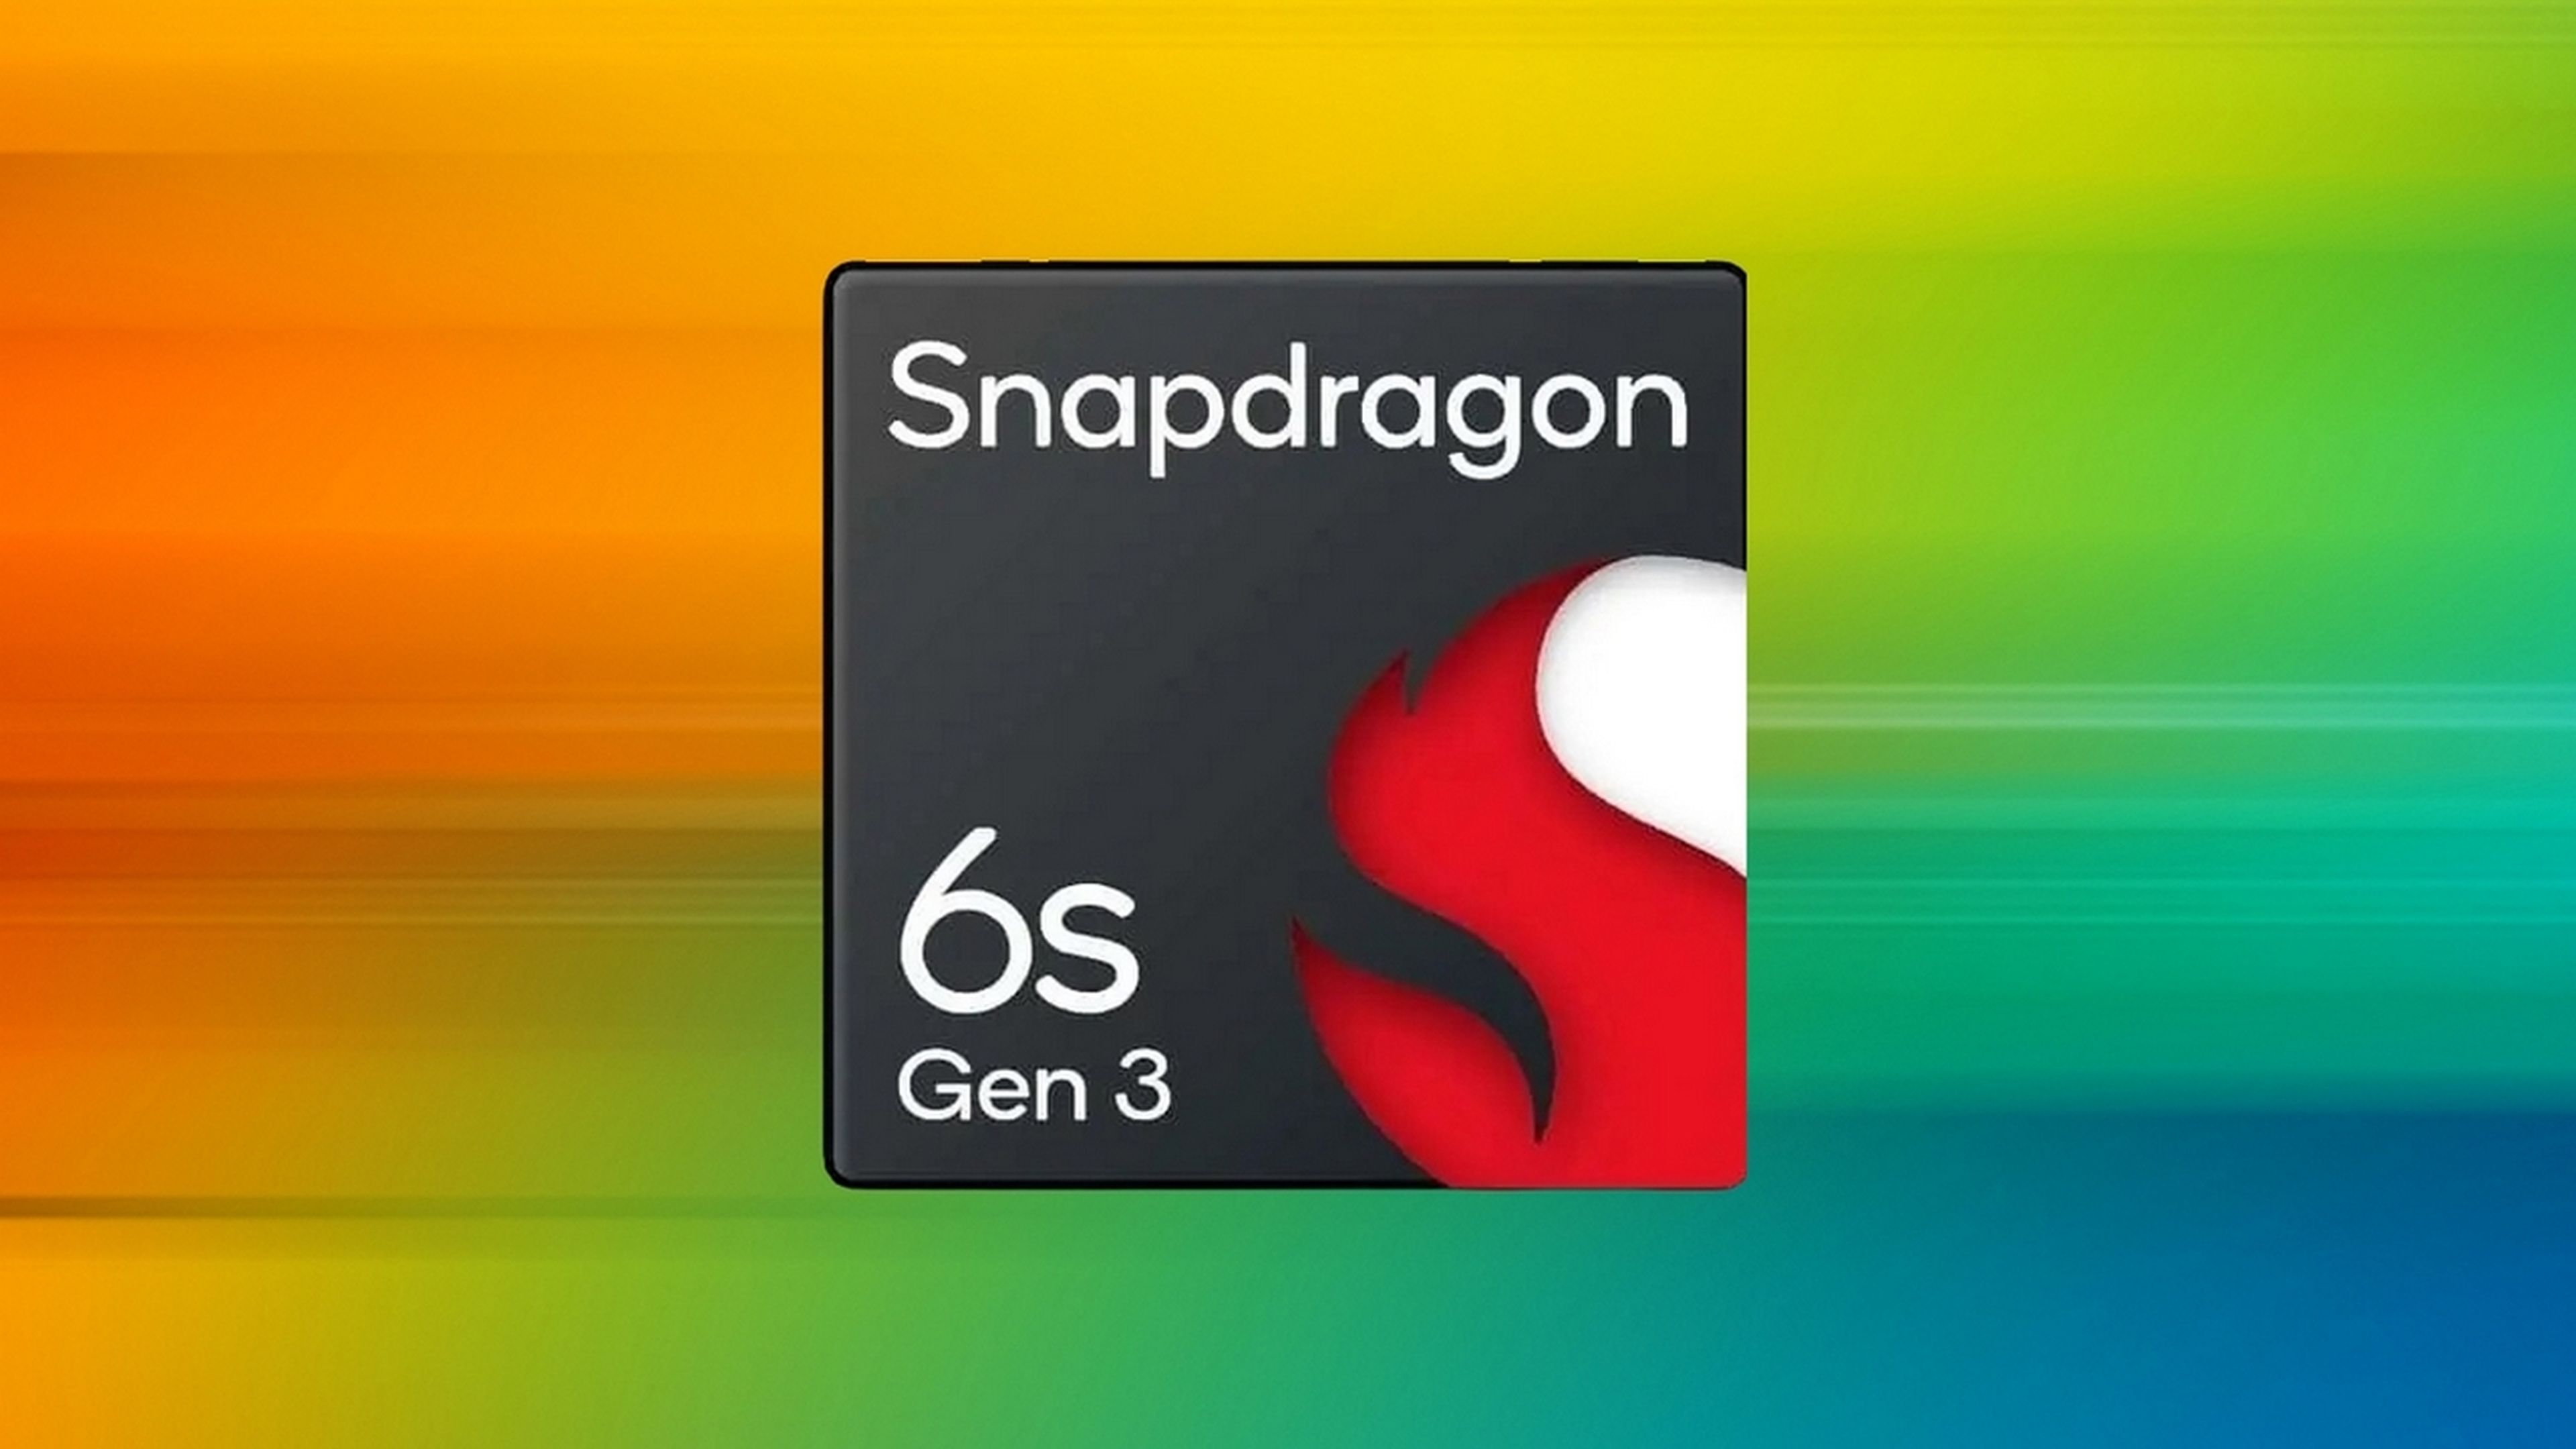 Qualcomm presenta el Snapdragon 6s Gen 3, el nuevo rey de la gama media de móviles